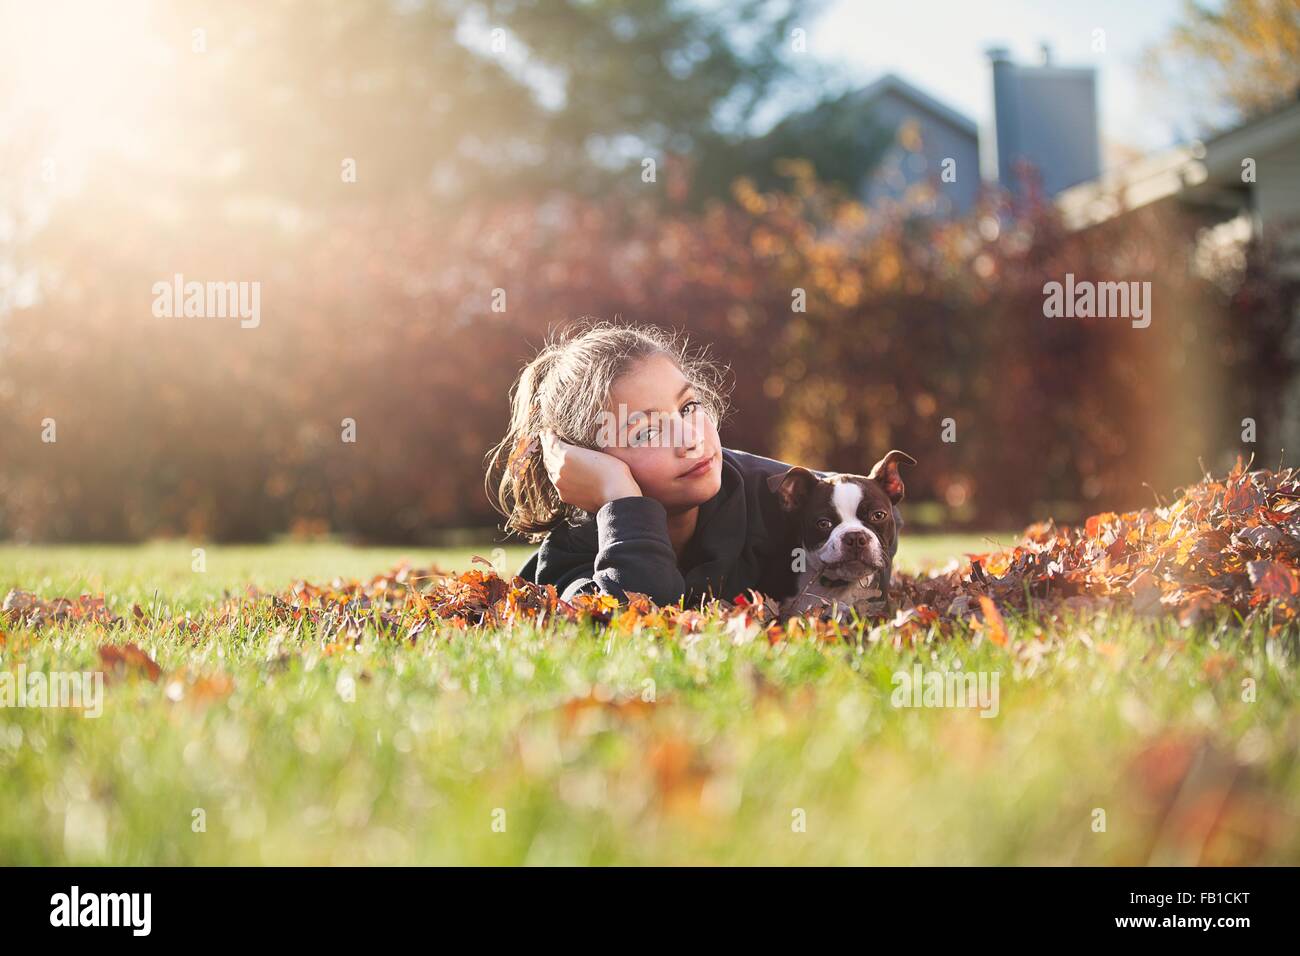 Mädchen mit Boston Terrier Welpe liegend vorne auf Herbstblatt bedeckt Rasen, ruht auf Ellenbogen Blick in die Kamera Stockfoto